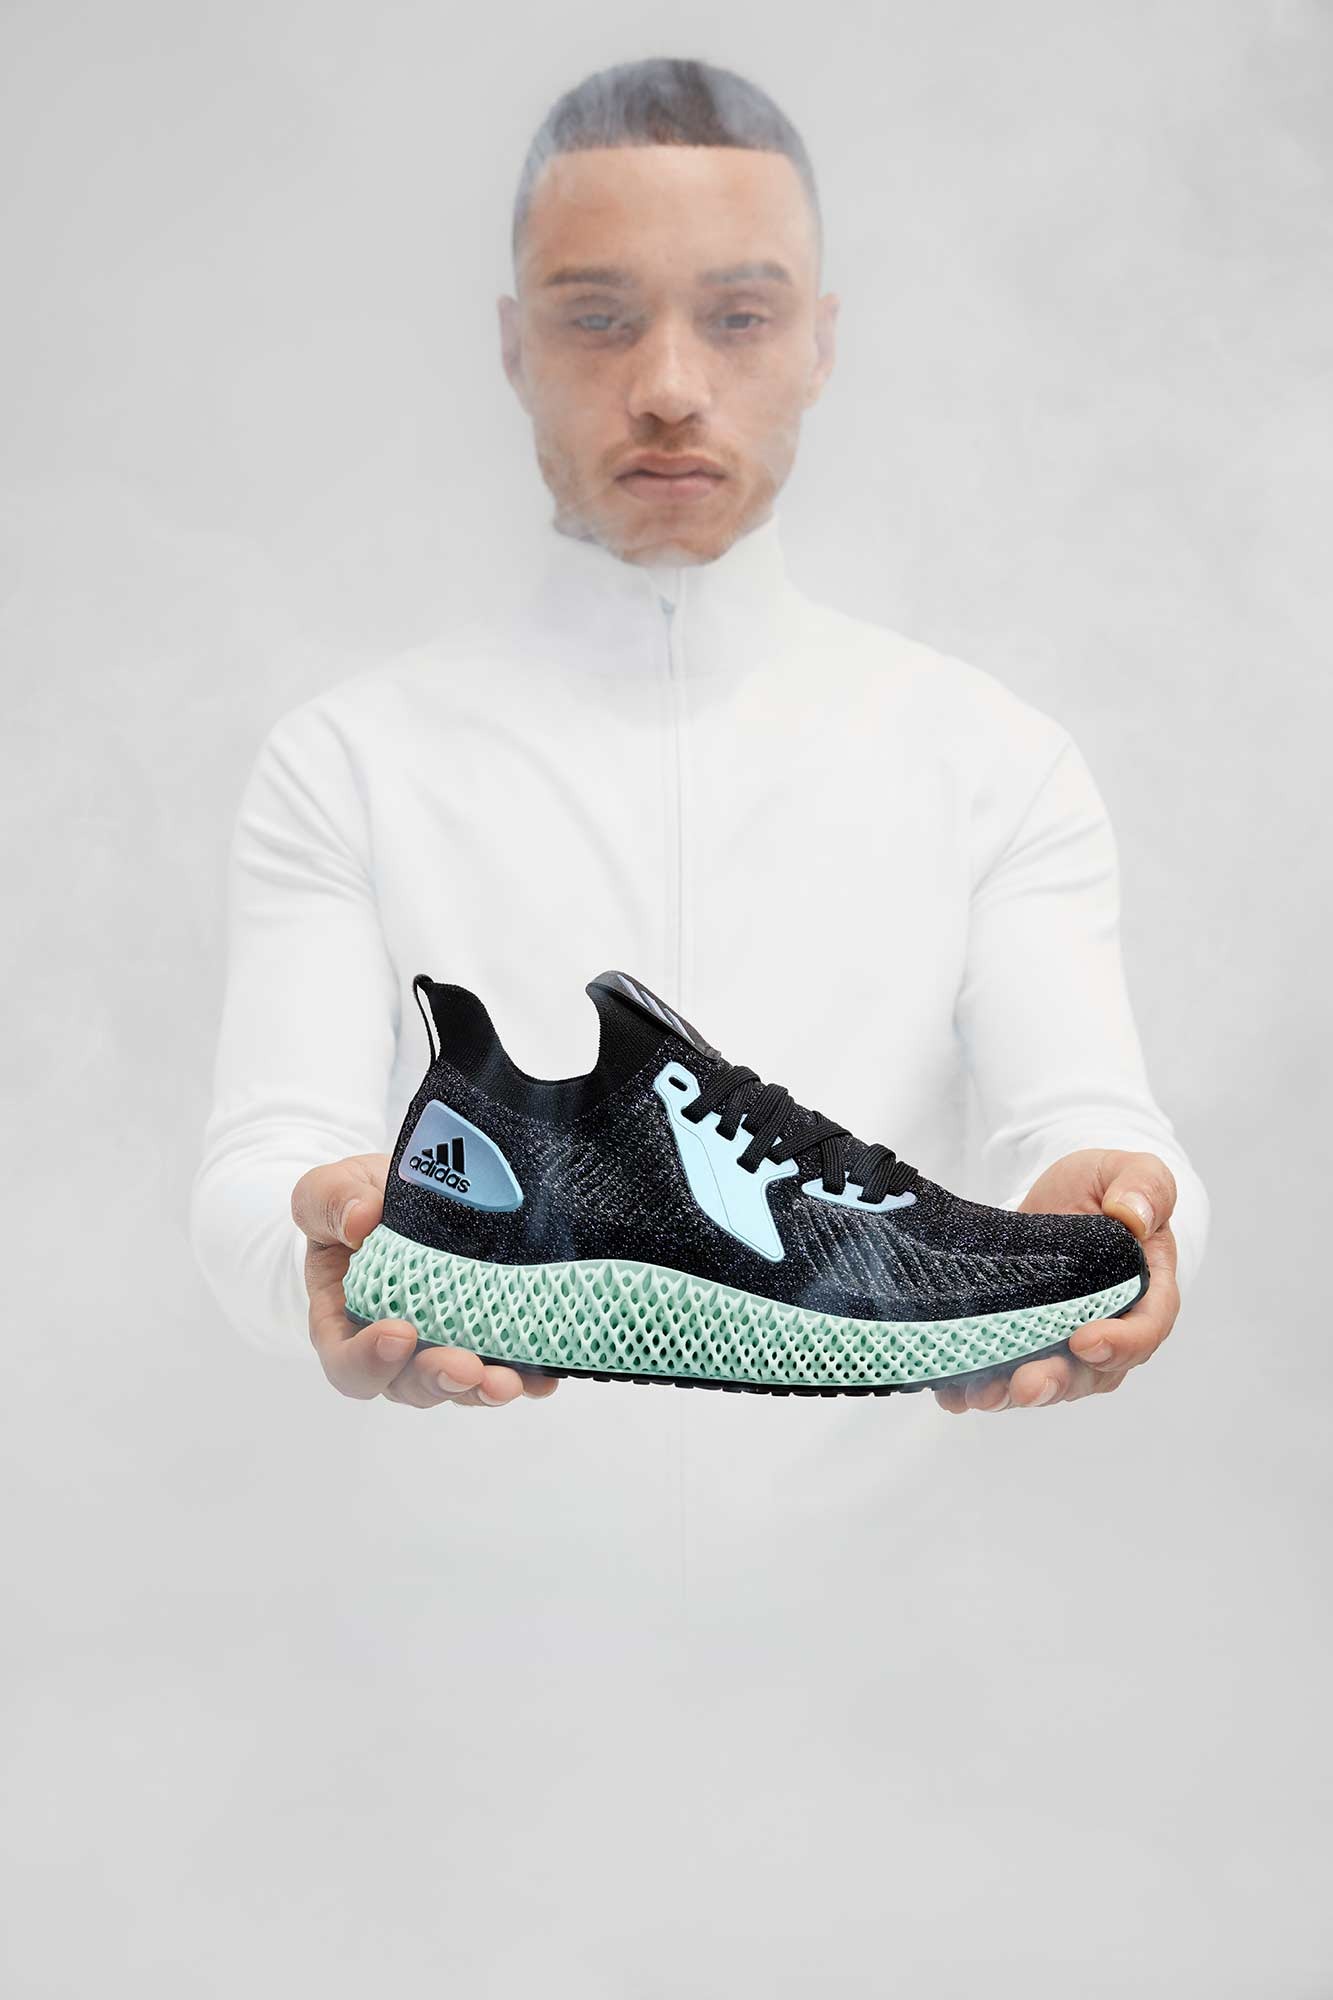 Adidas x Highsnobiety 2 by Marcus GAAB